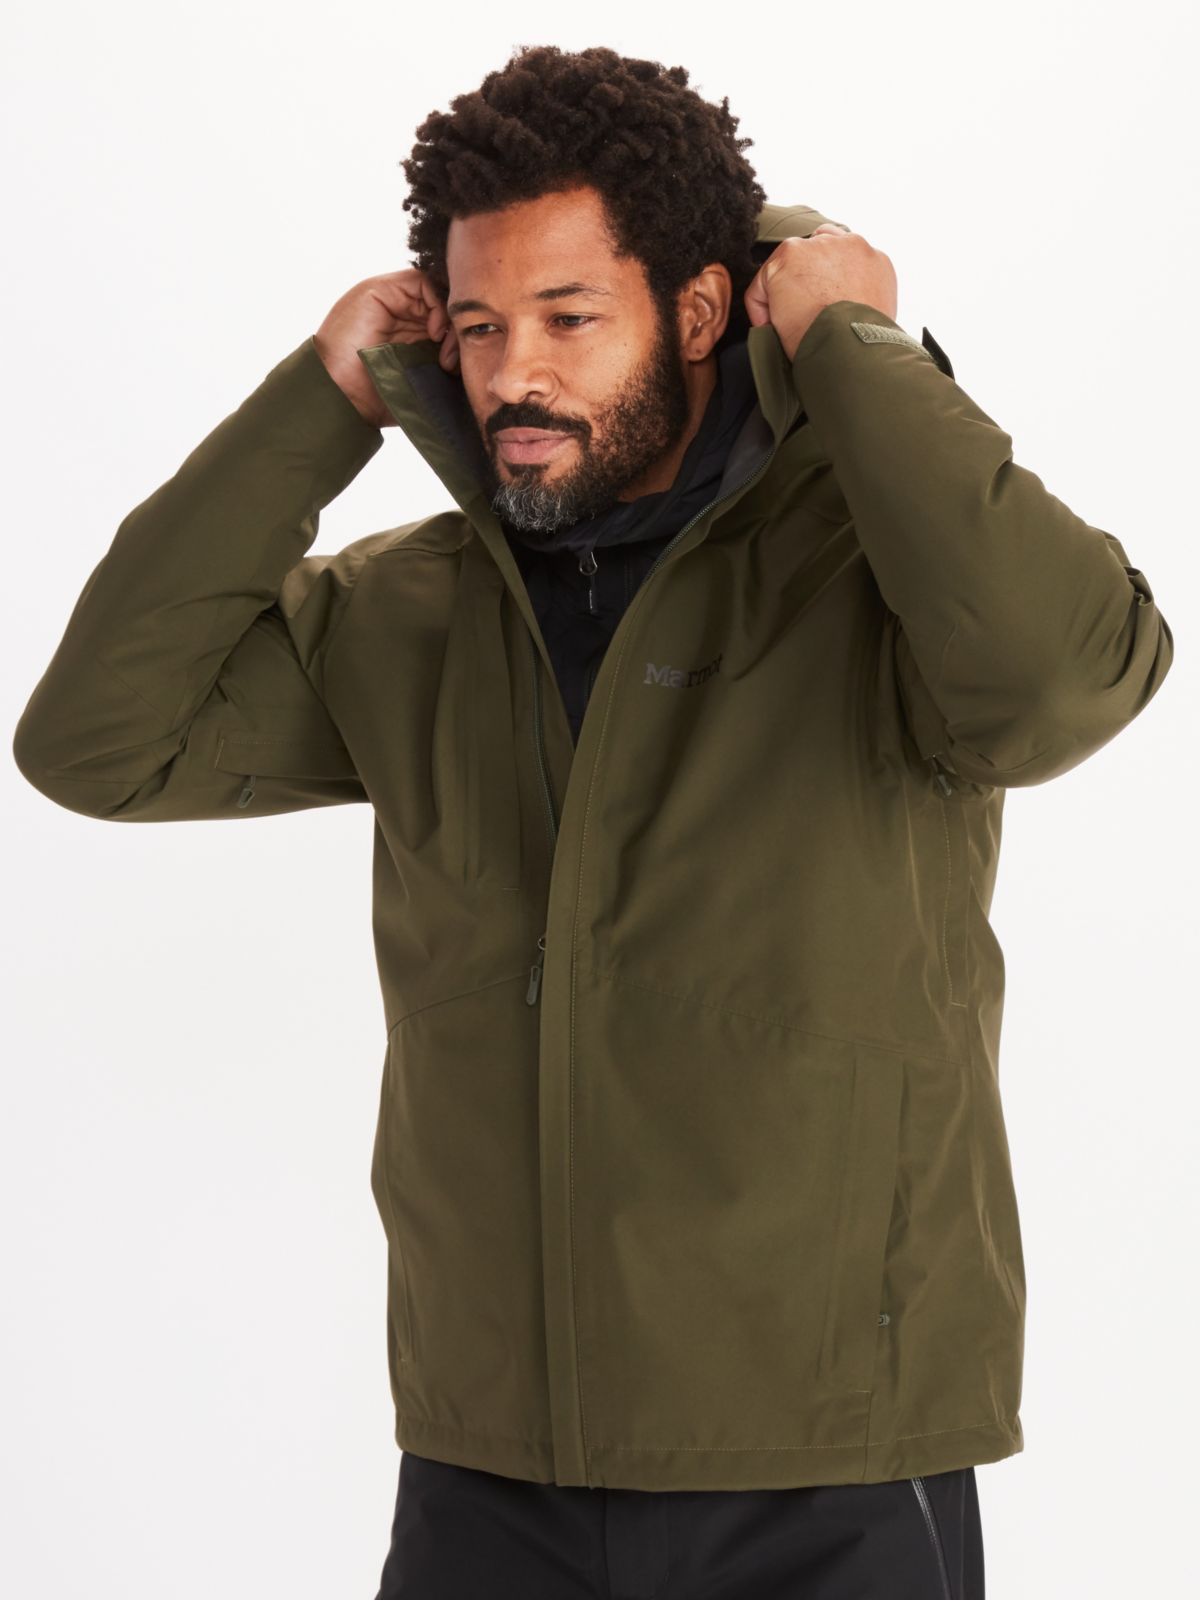 man modeling hood of minimalist jacket in nori